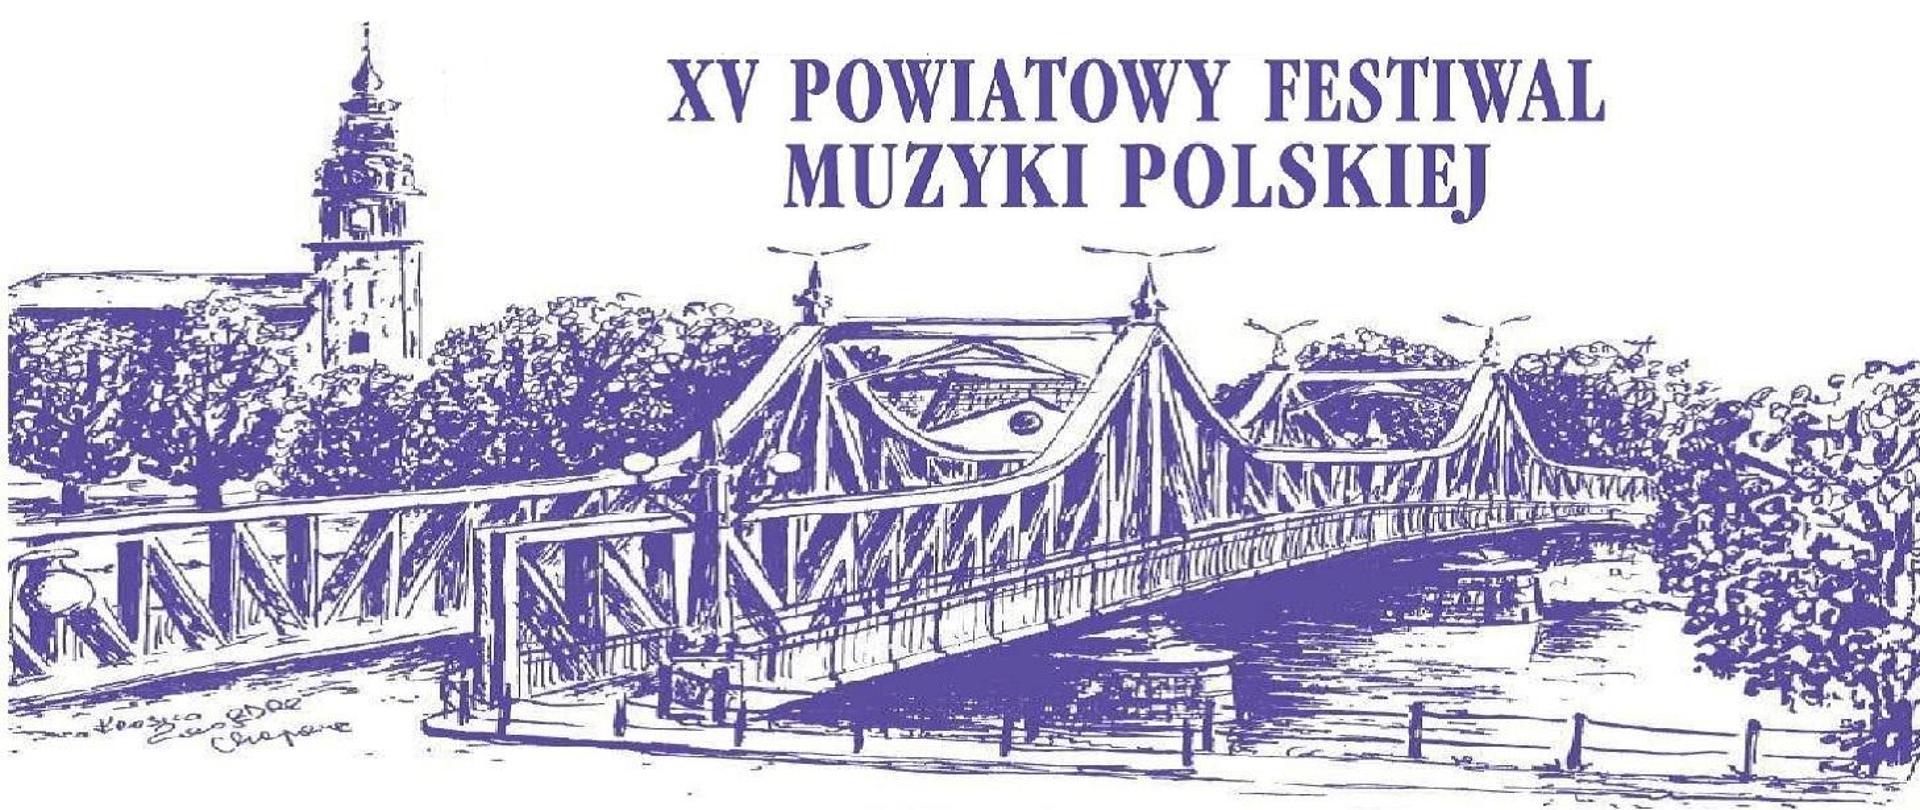 W kolorze granatowym widzimy szkic starego historycznego mostu łączącego dwa brzegi Odry znajdującego się w Krośnie Odrzańskim oraz widok na wieże kościoła. Został zamieszczony także napis informujący o Festiwalu Muzyki Polskiej odbywającym się w PSM w Krośnie Odrzańskim.